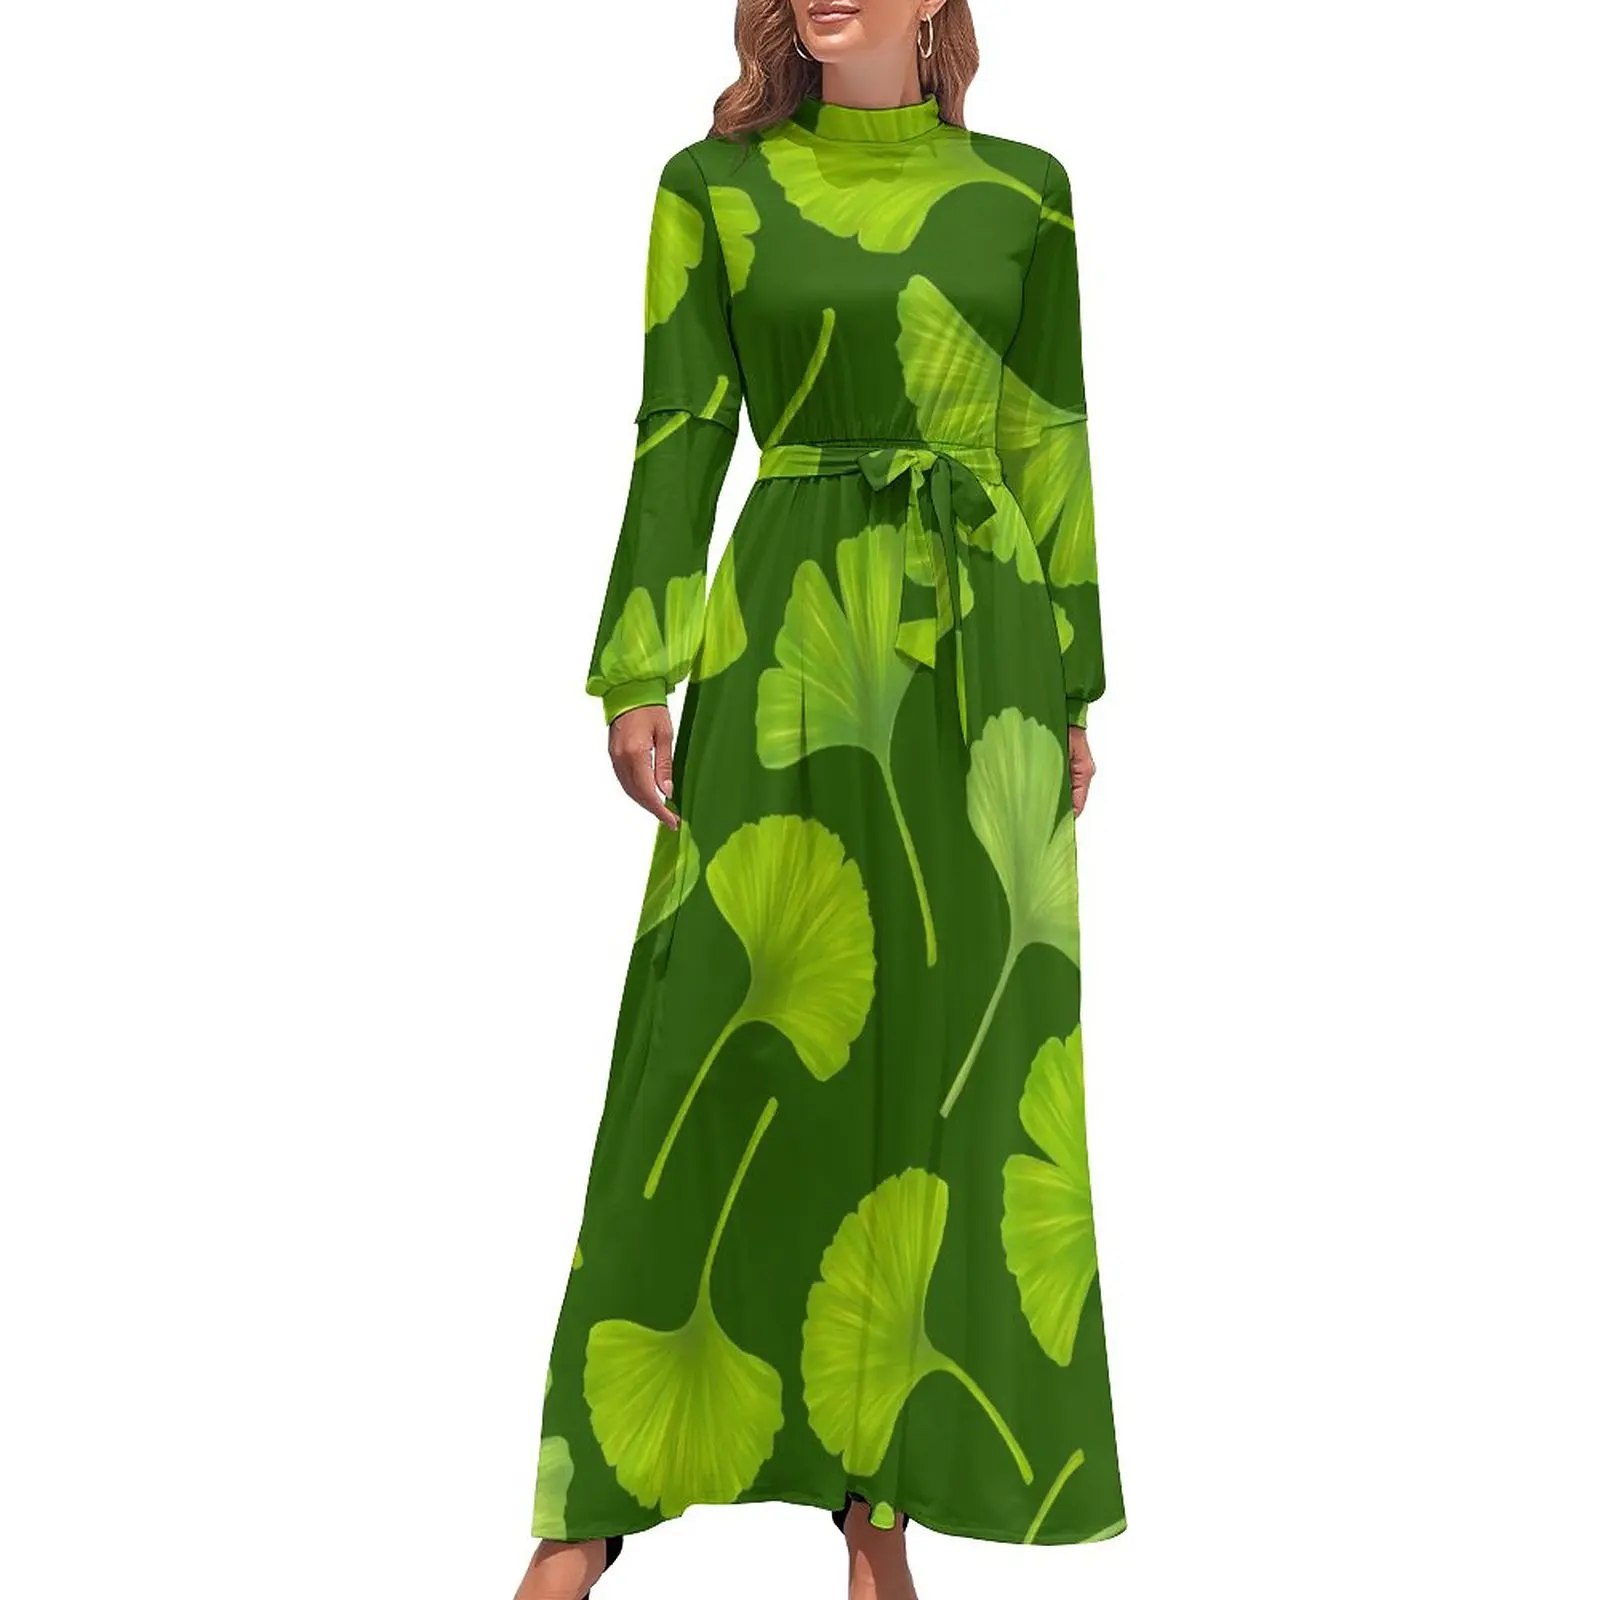 

Зеленое платье Гинко Билоба с милым принтом листьев, стильное богемное длинное платье, дизайнерская одежда с высокой талией